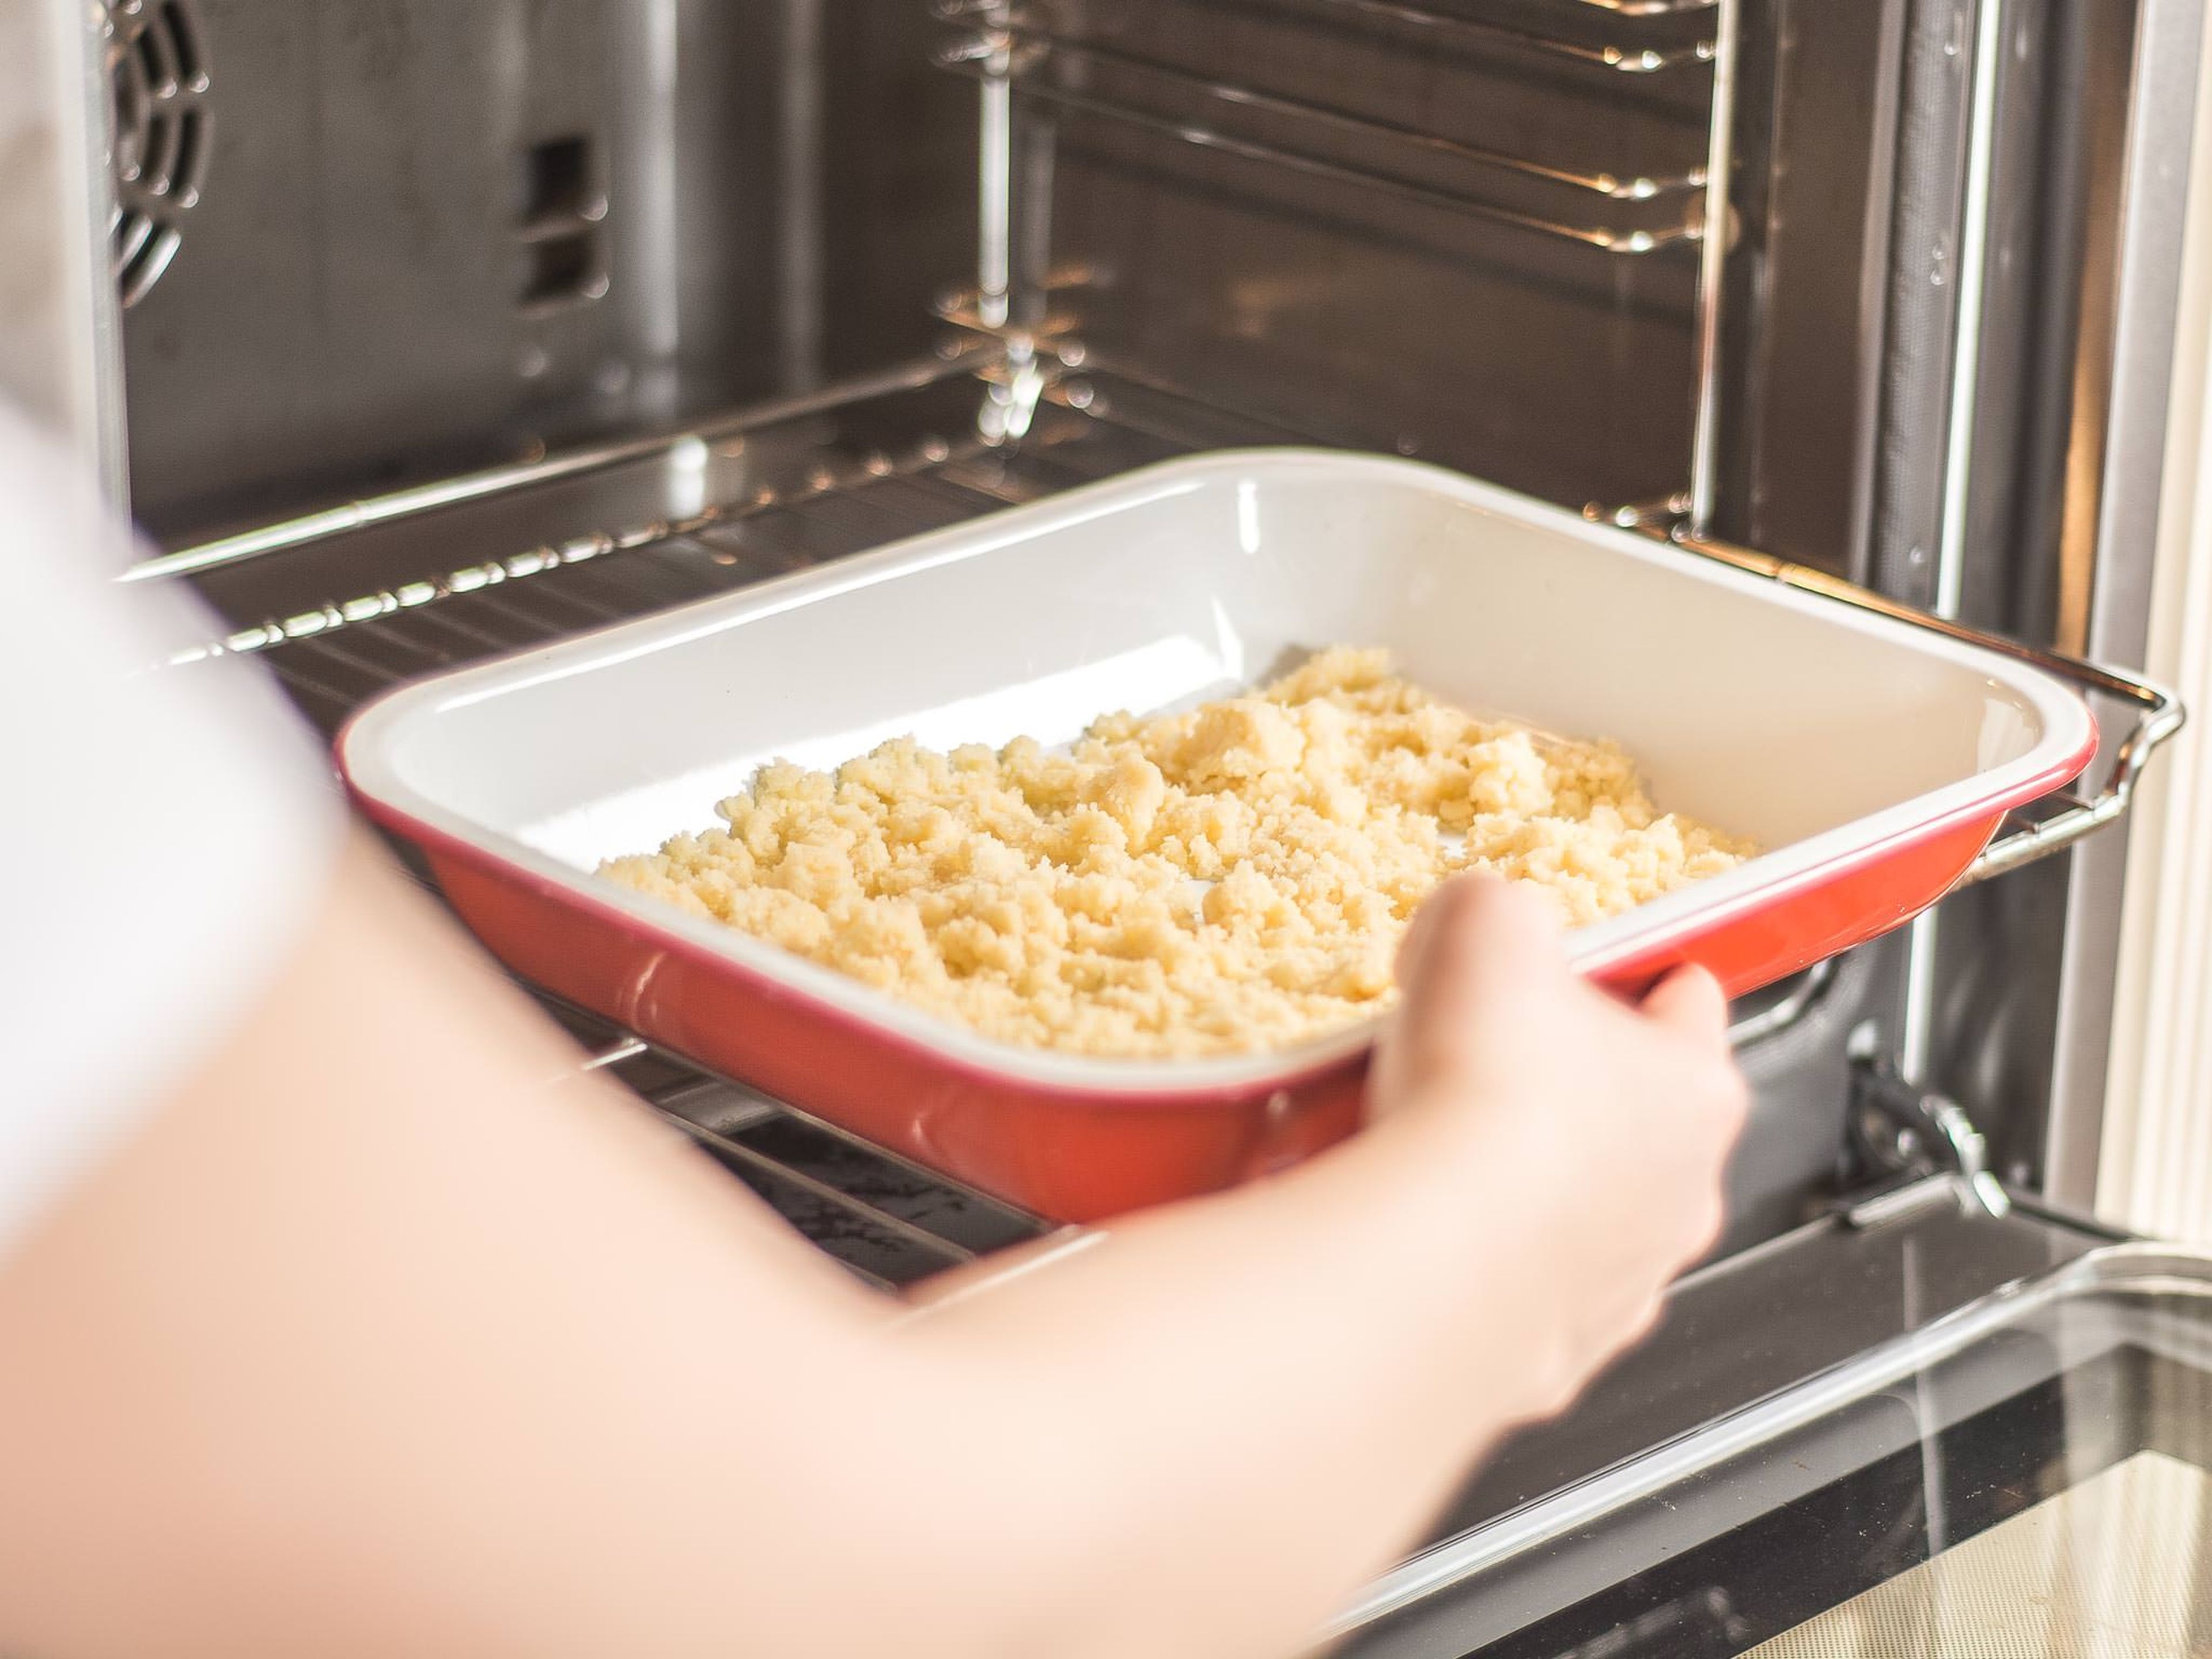 Die Streusel in eine Auflaufform oder auf ein mit Backpapier ausgelegtes Backblech verteilen und im vorgeheizten Ofen bei 160°C ca. 8 – 10 Min. goldgelb und knusprig backen.